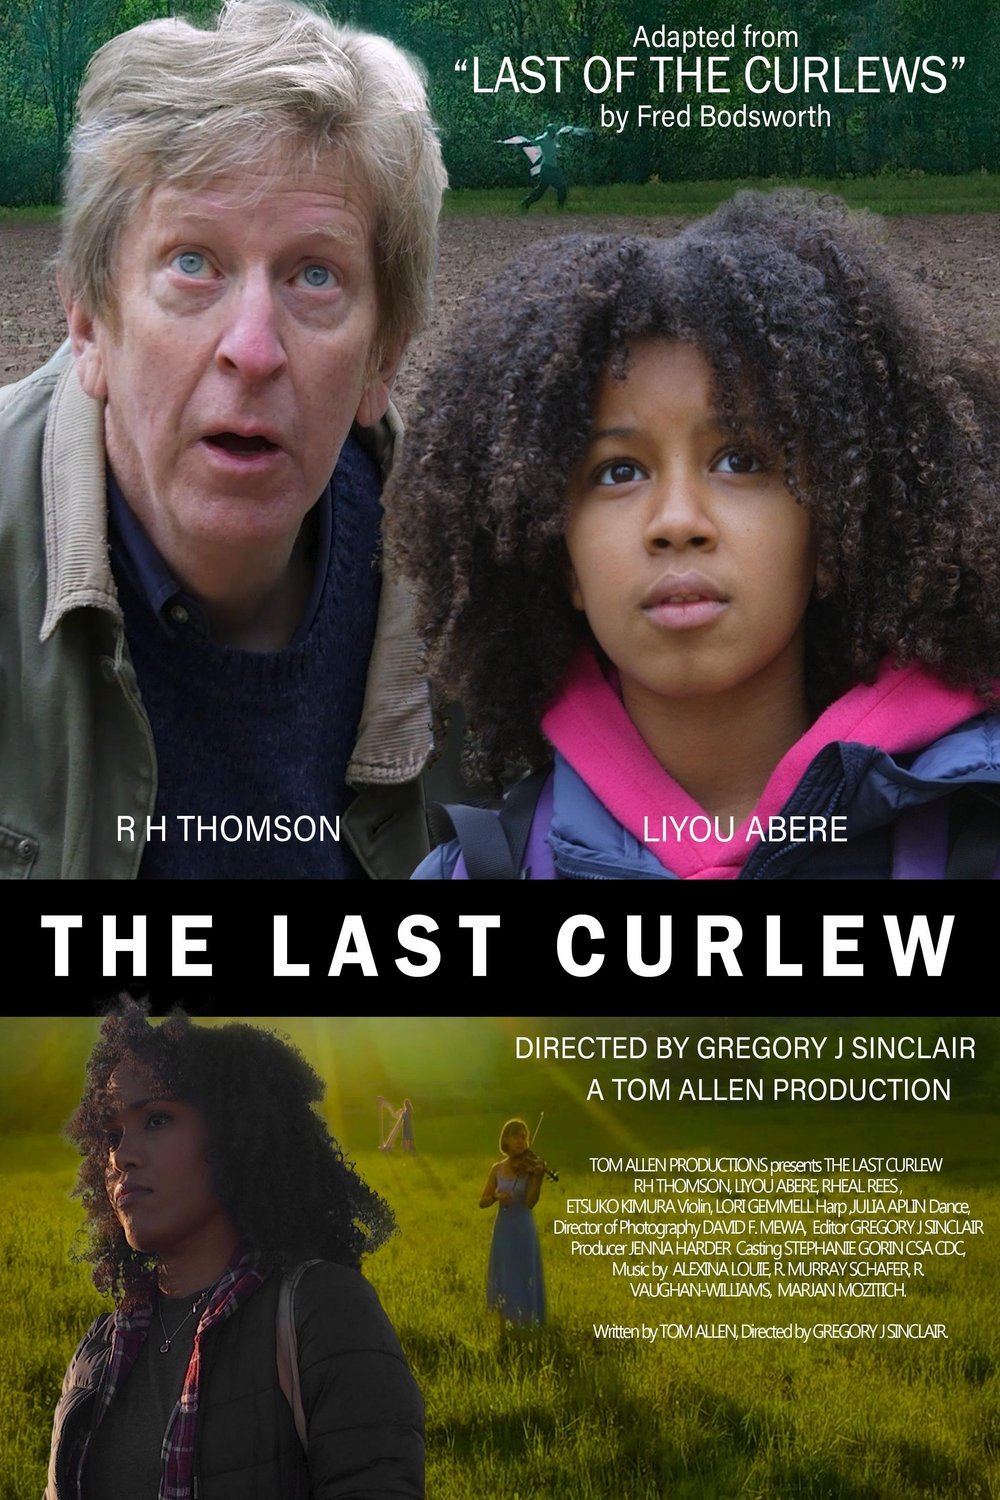 L'affiche du film The Last Curlew